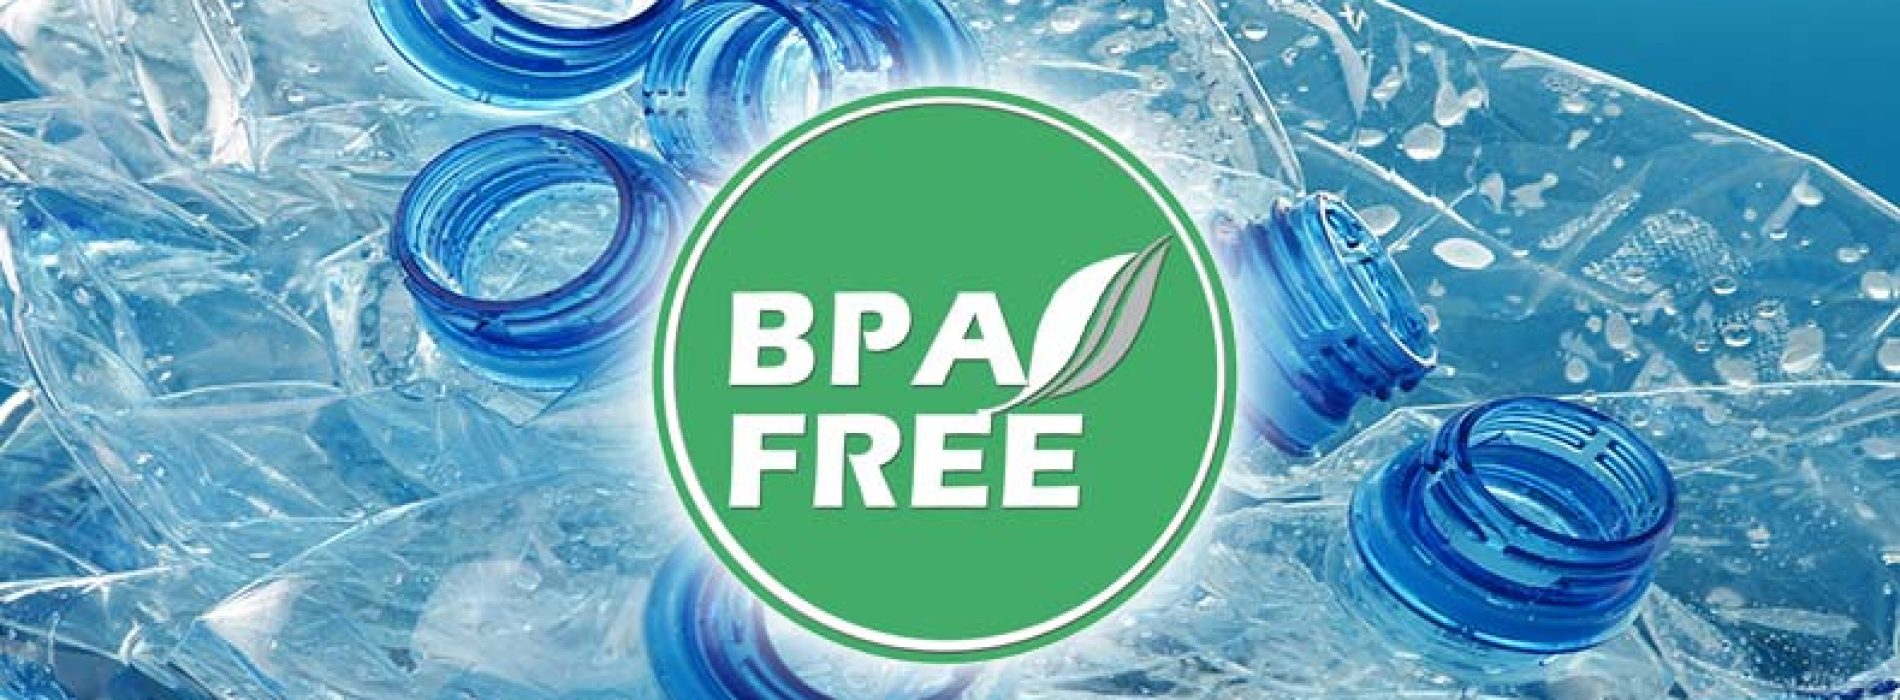 Denkt u dat alle BPA-vrije producten veilig zijn? Niet zo snel, waarschuwen wetenschappers